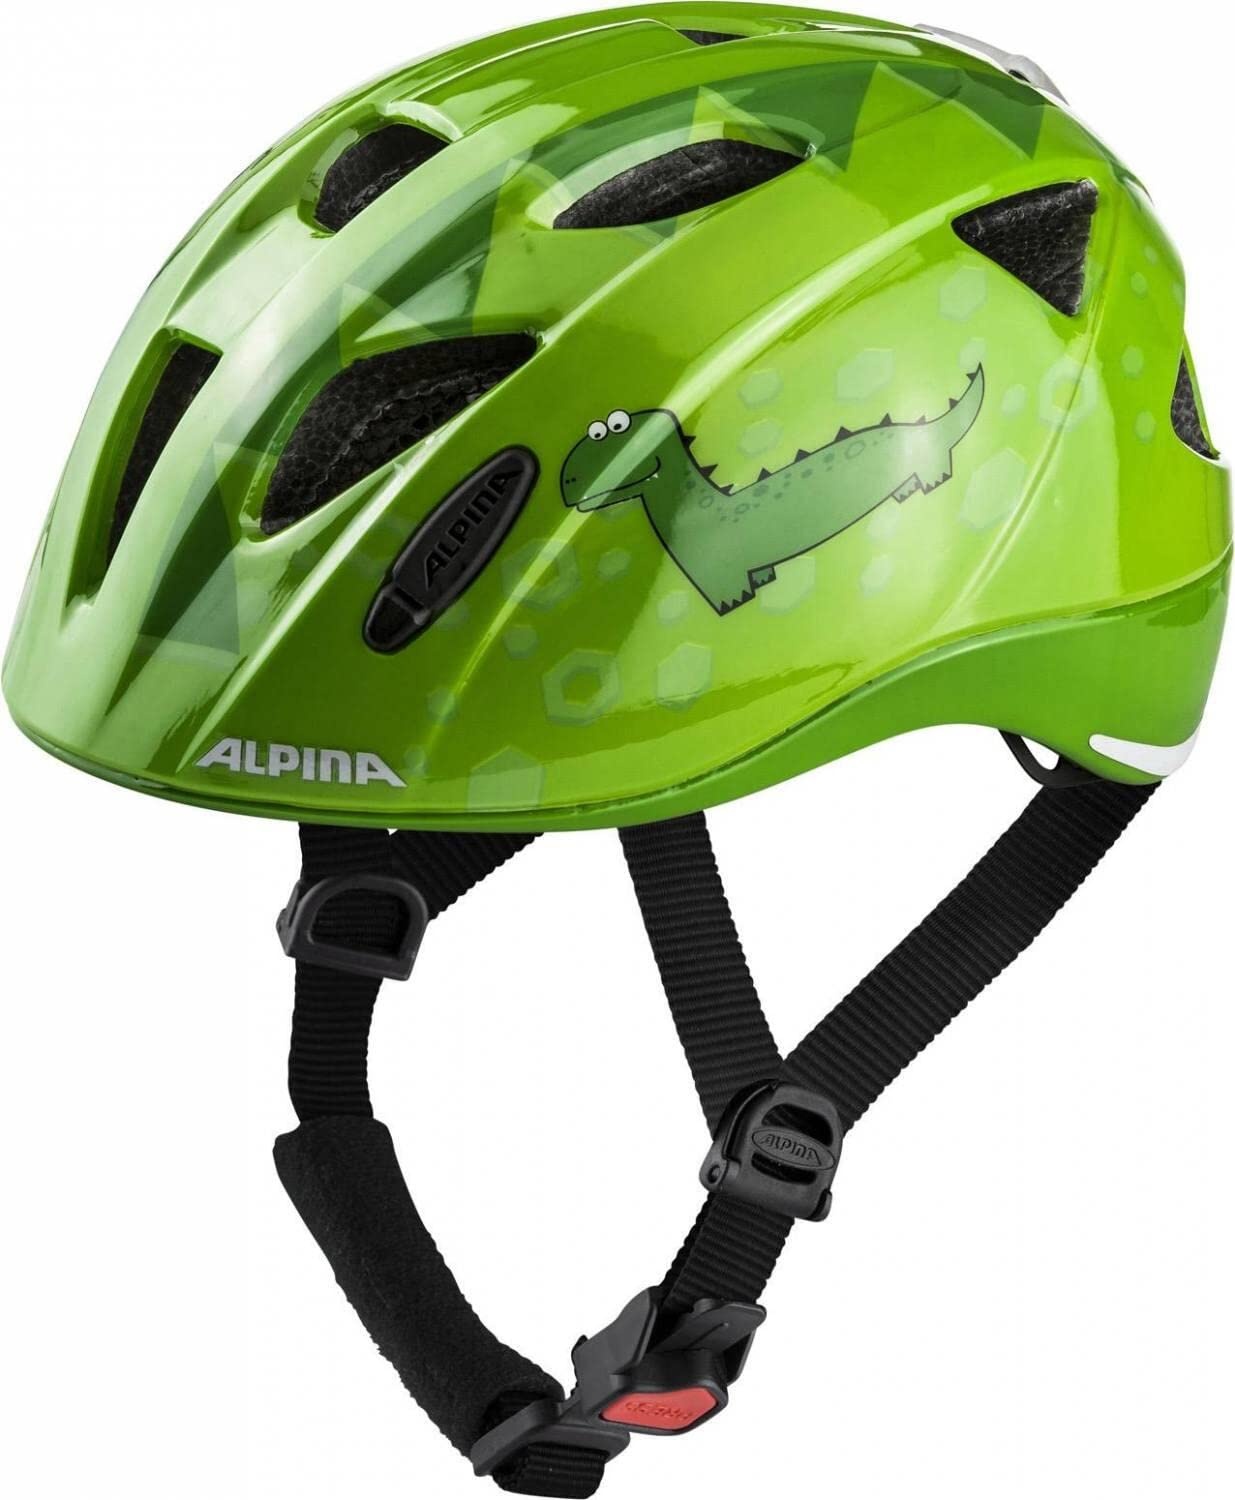 ALPINA XIMO FLASH - Beleuchteter, Reflektierender, Leichter & Anpassbarer LED Fahrradhelm Für Kinder, green dino gloss, 49-54 cm